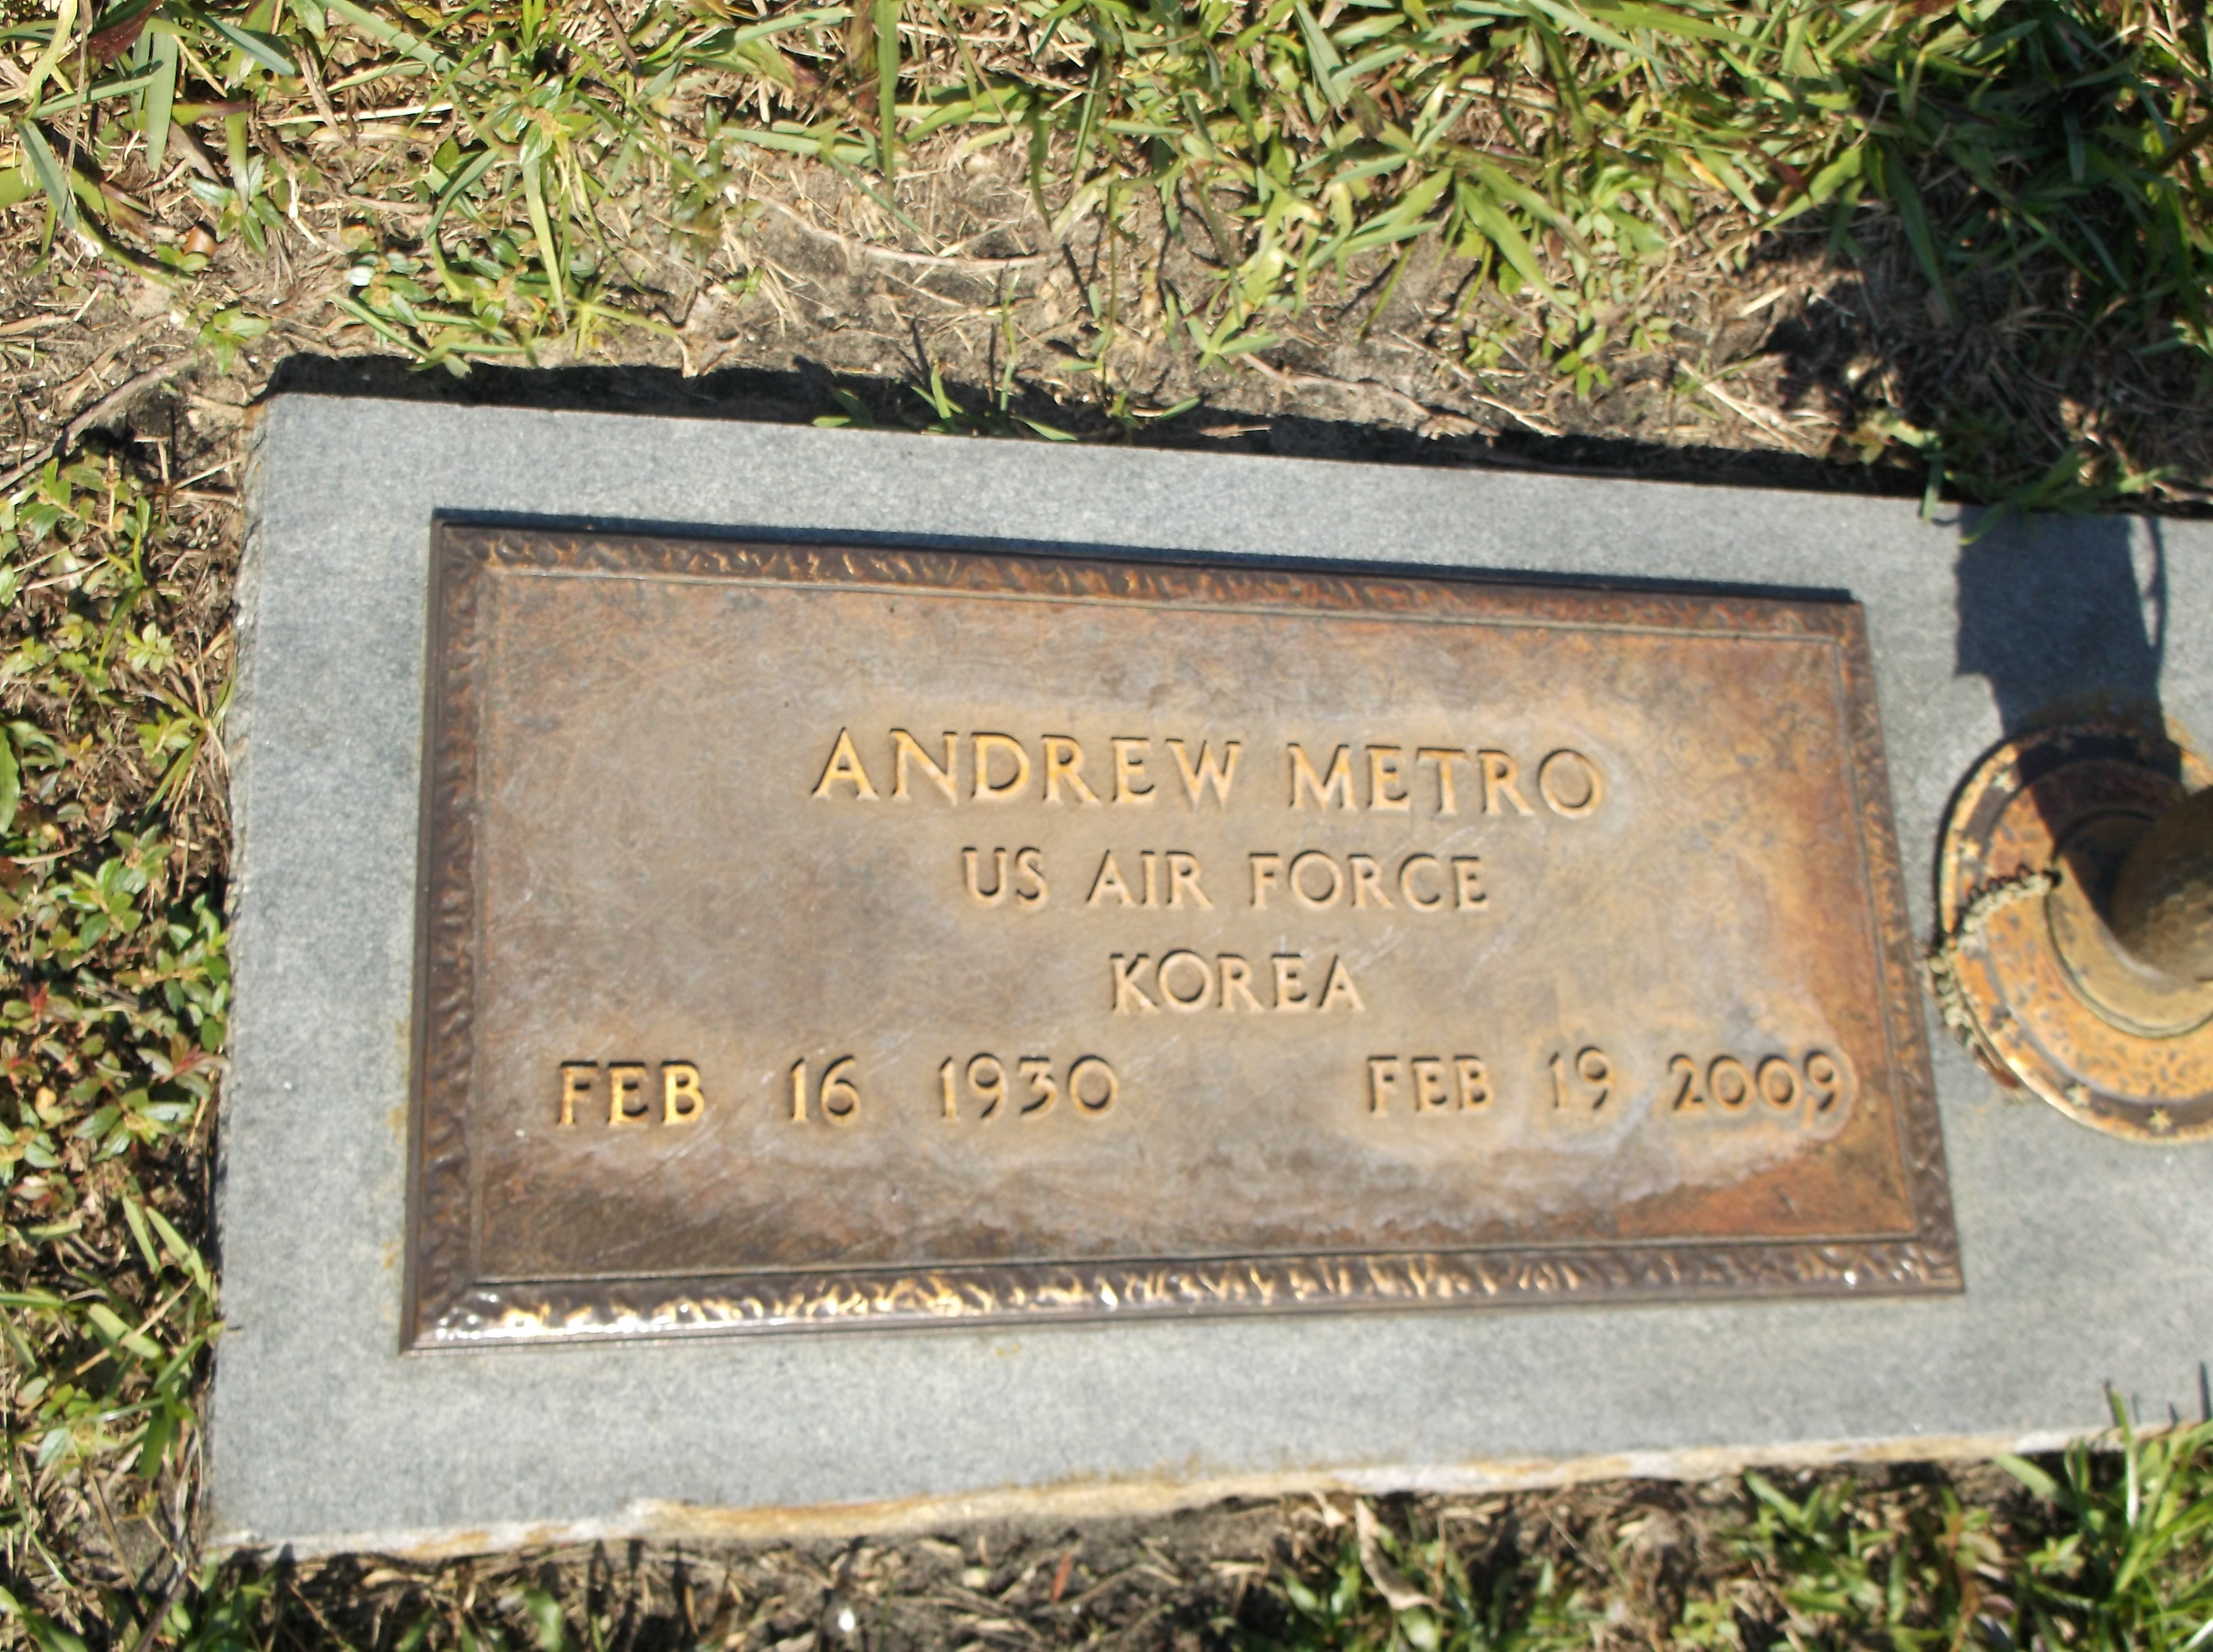 Andrew Metro